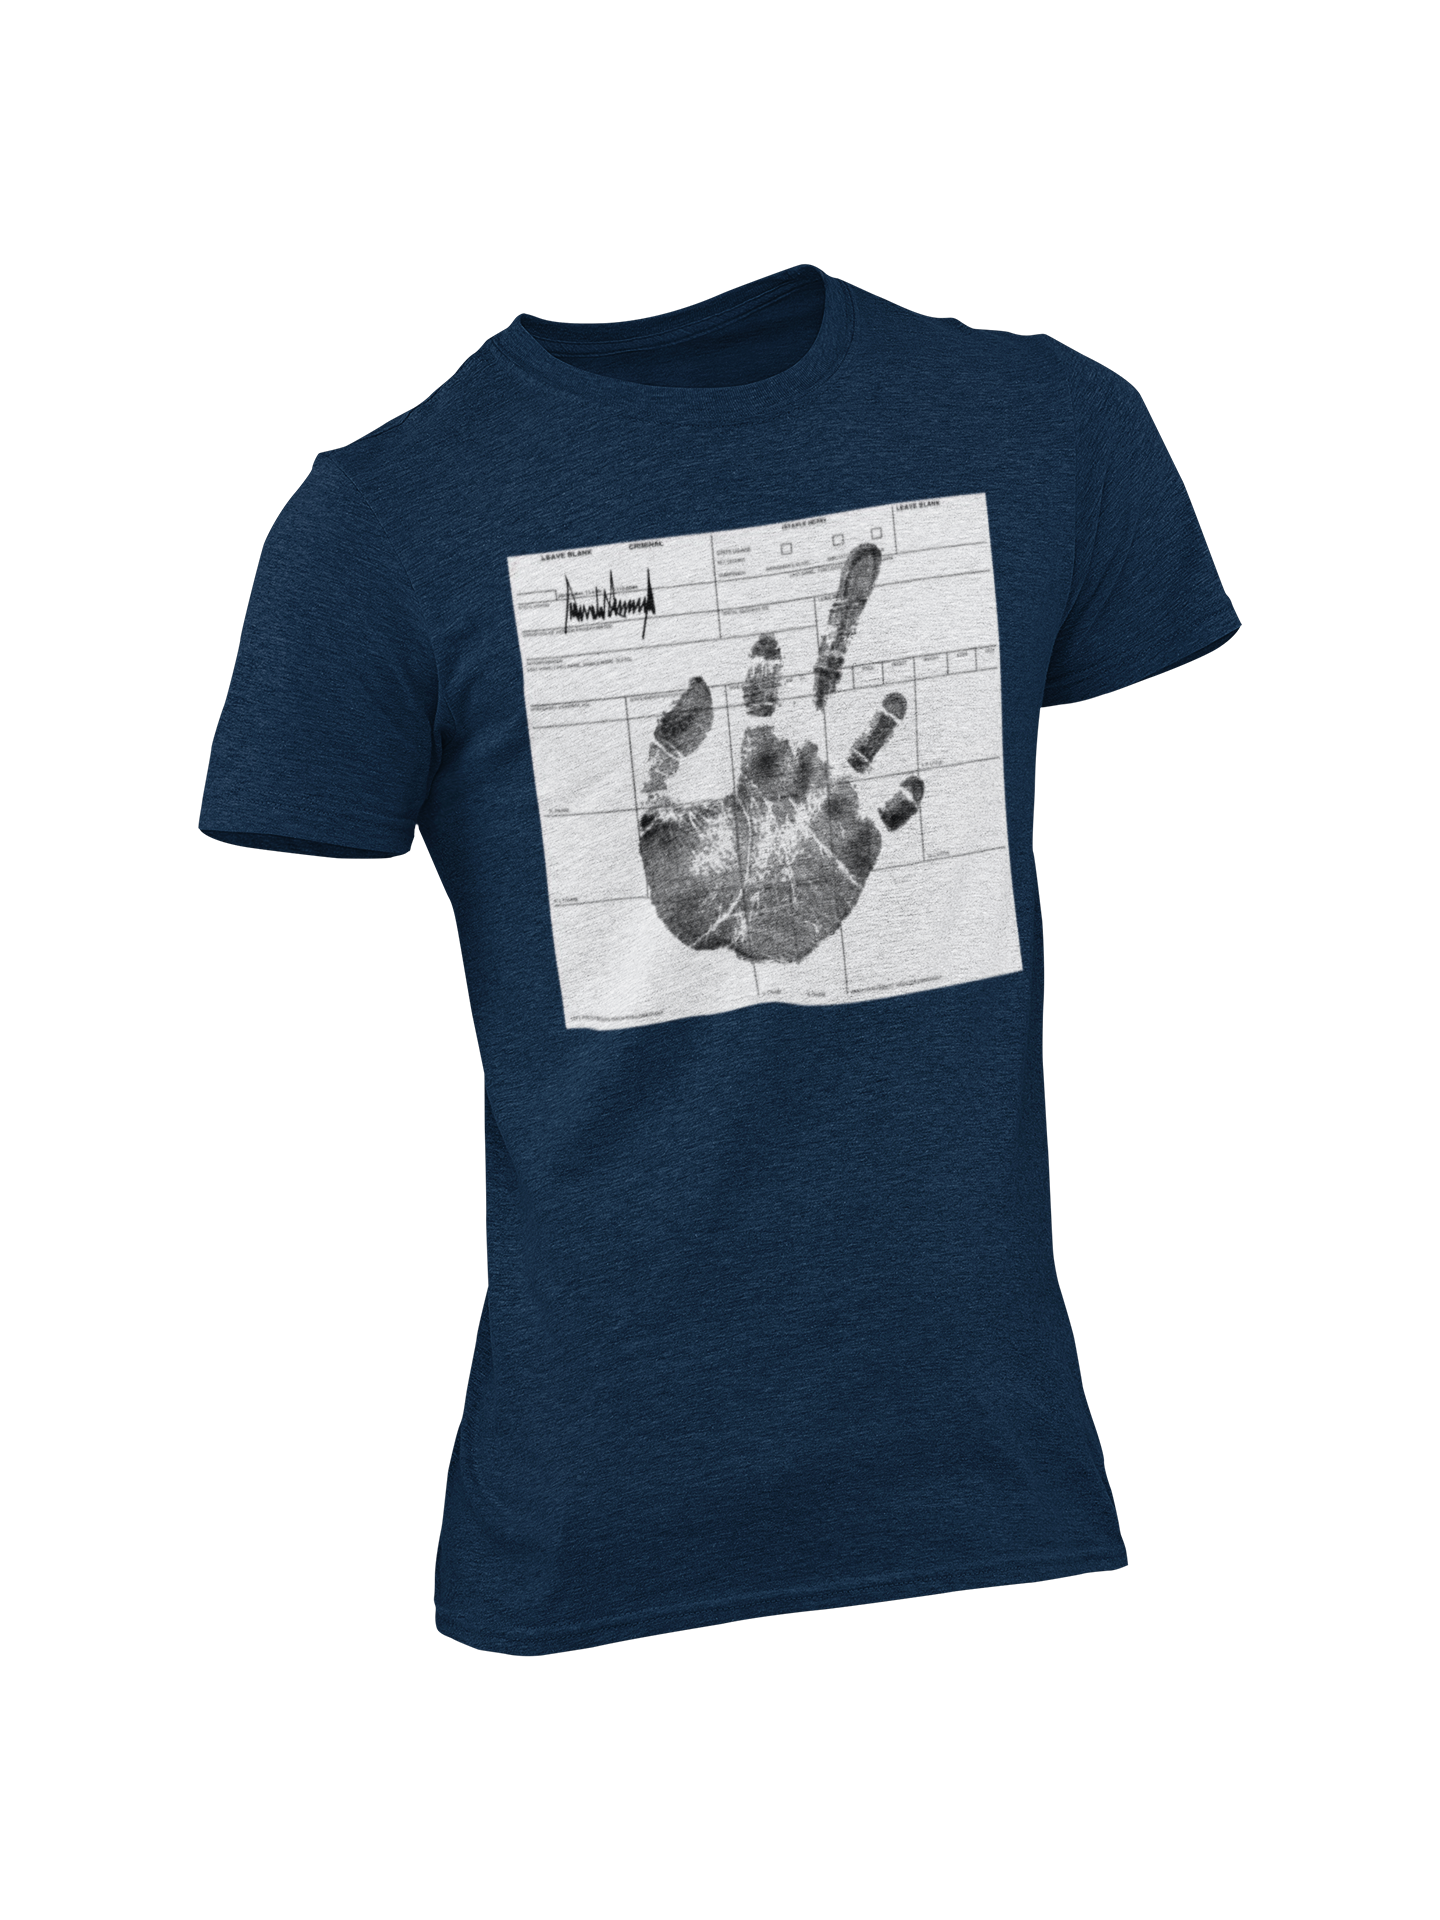 President Trump "Fingerprint" T-Shirt